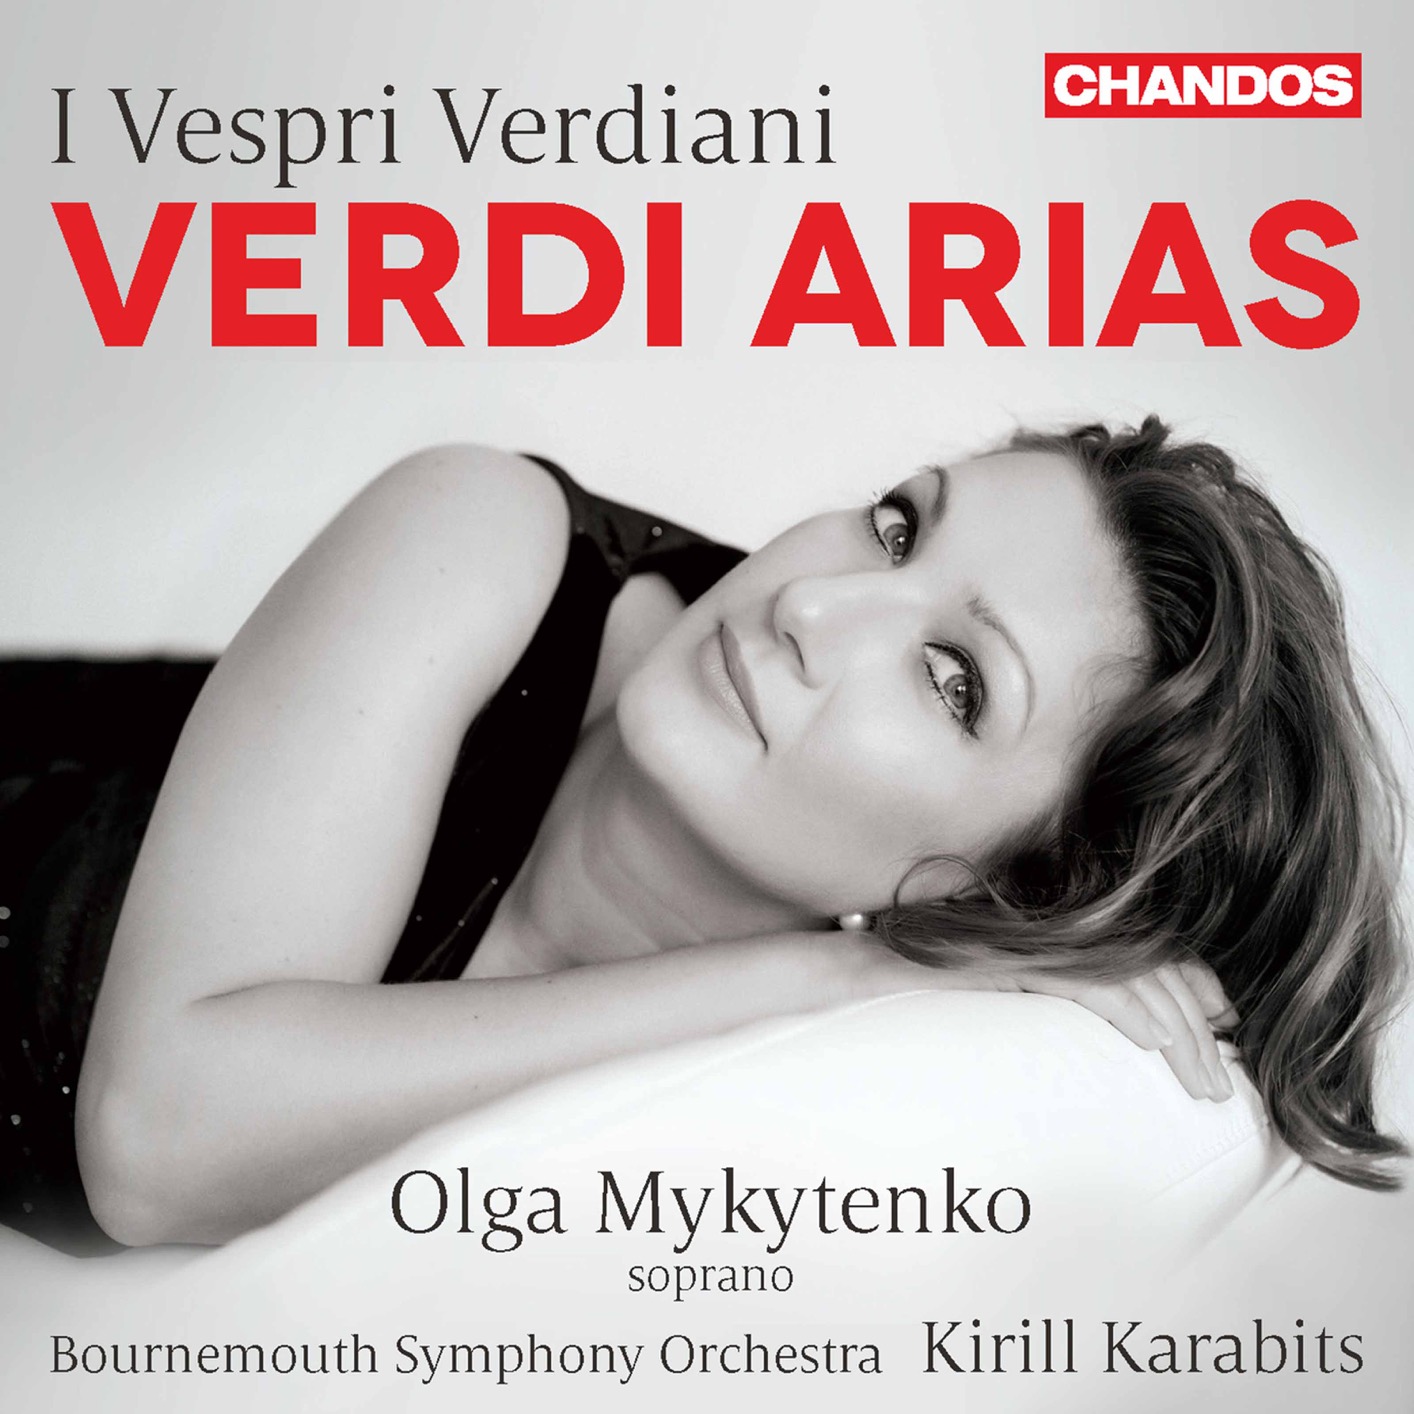 Olga Mykytenko, Bournemouth Symphony Orchestra & Kirill Karabits - I vespri verdiani: Verdi Arias (2020) [FLAC 24bit/96kHz]